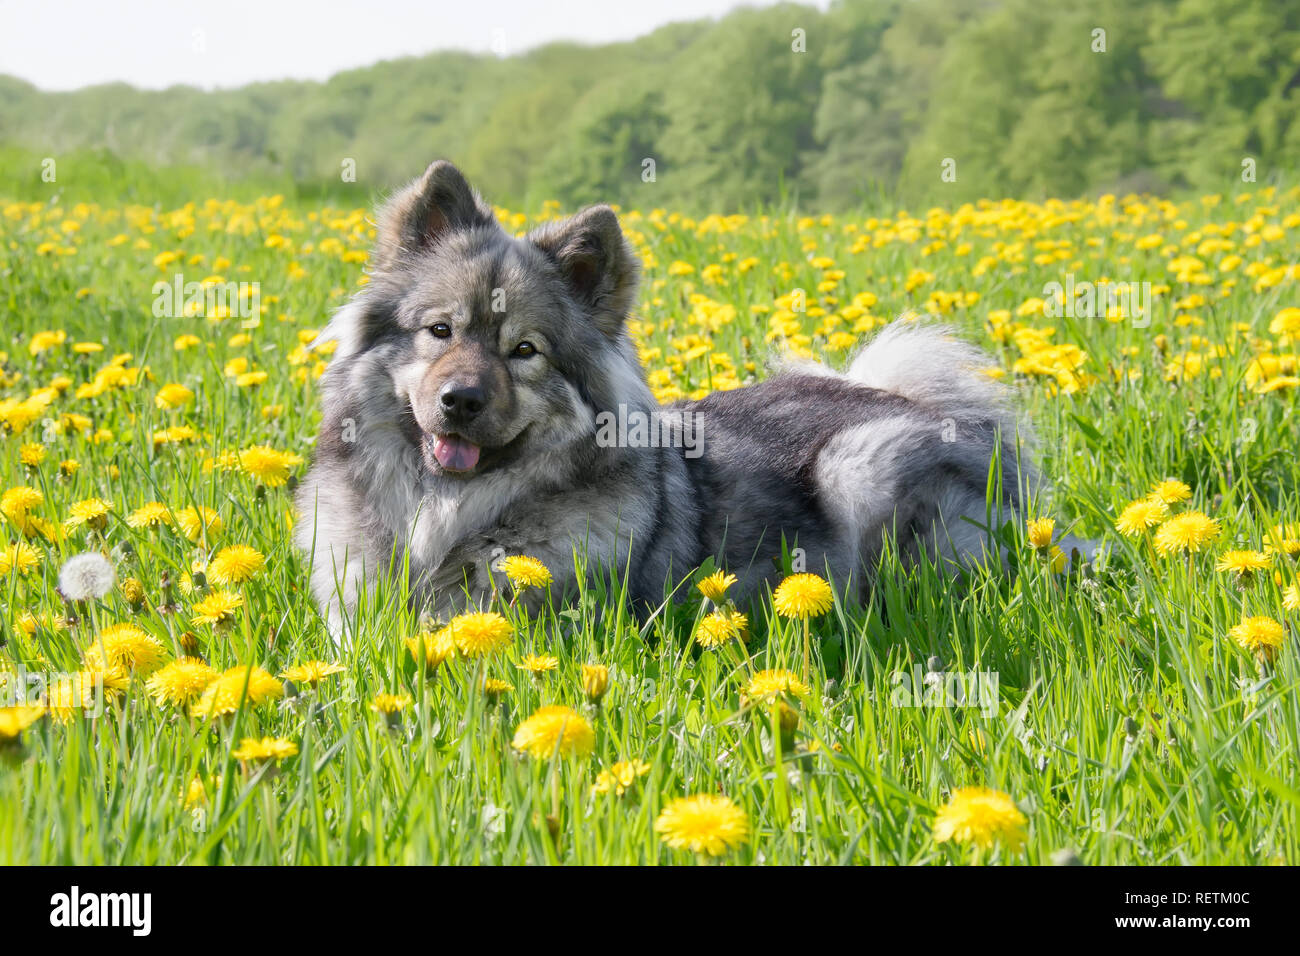 Ein niedliches Eurasier Hund (Spitz) liegt in einer Wiese mit gelben Löwenzahn Blumen an einem sonnigen Tag im Frühjahr Stockfoto